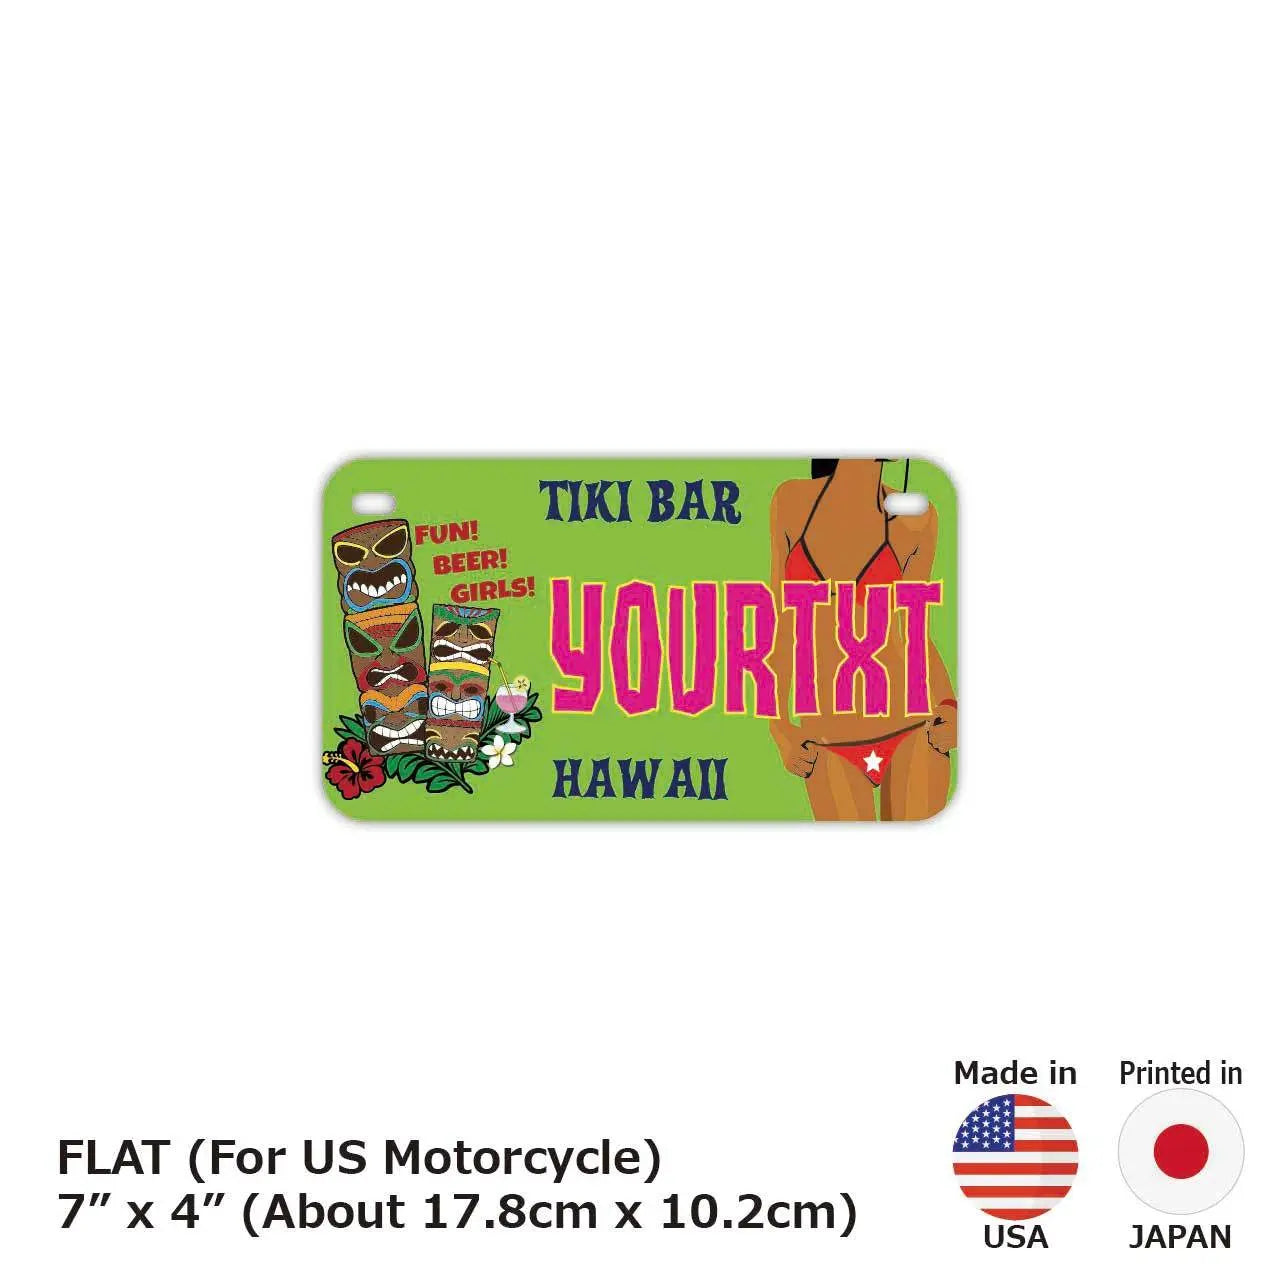 【中・USバイク用】ハワイ・ティキバー/オリジナルアメリカナンバープレート PL8HERO